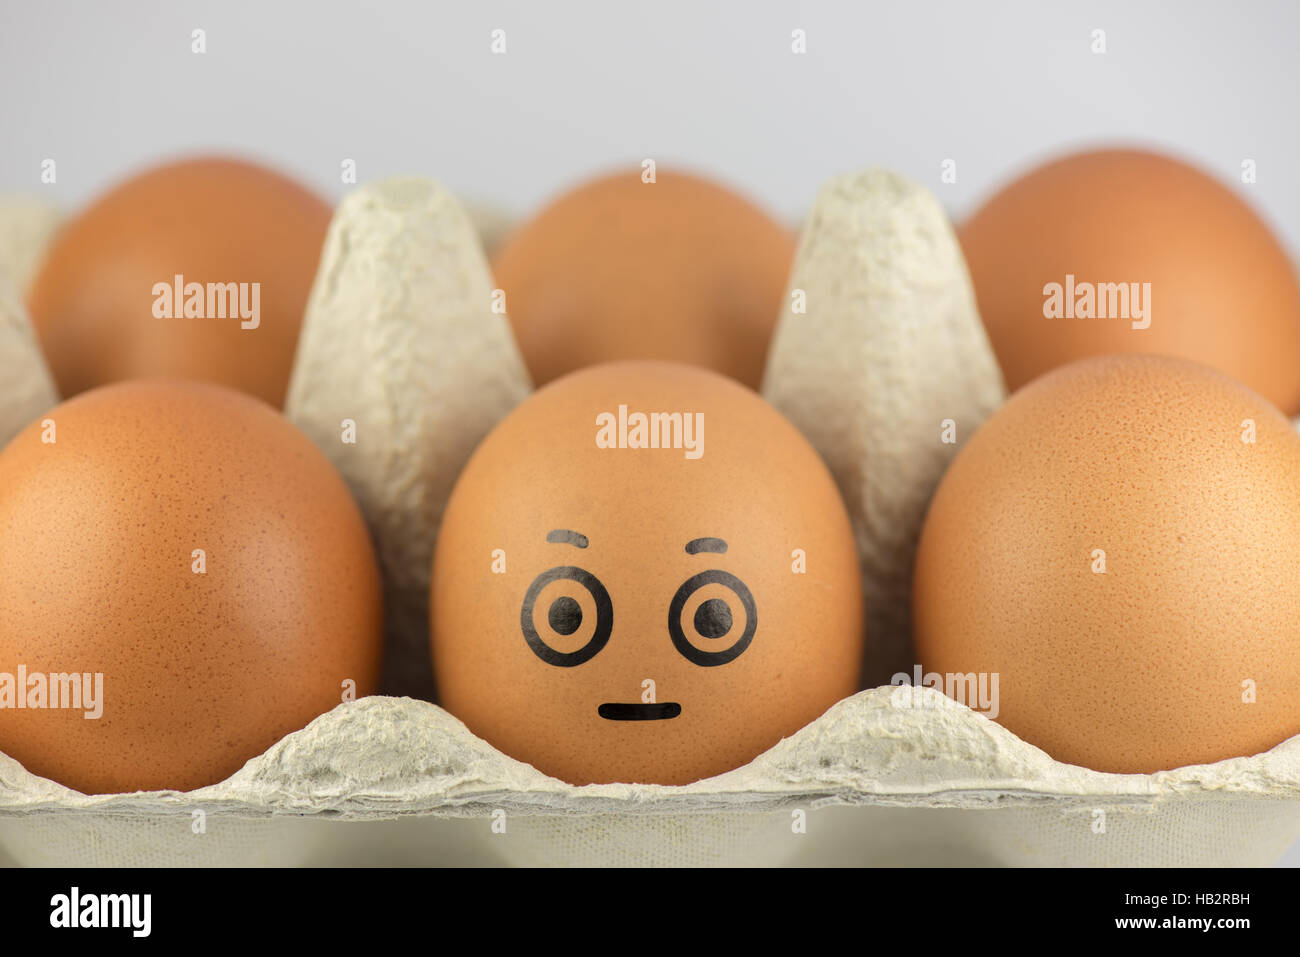 Egg with a face in a egg carton Stock Photo